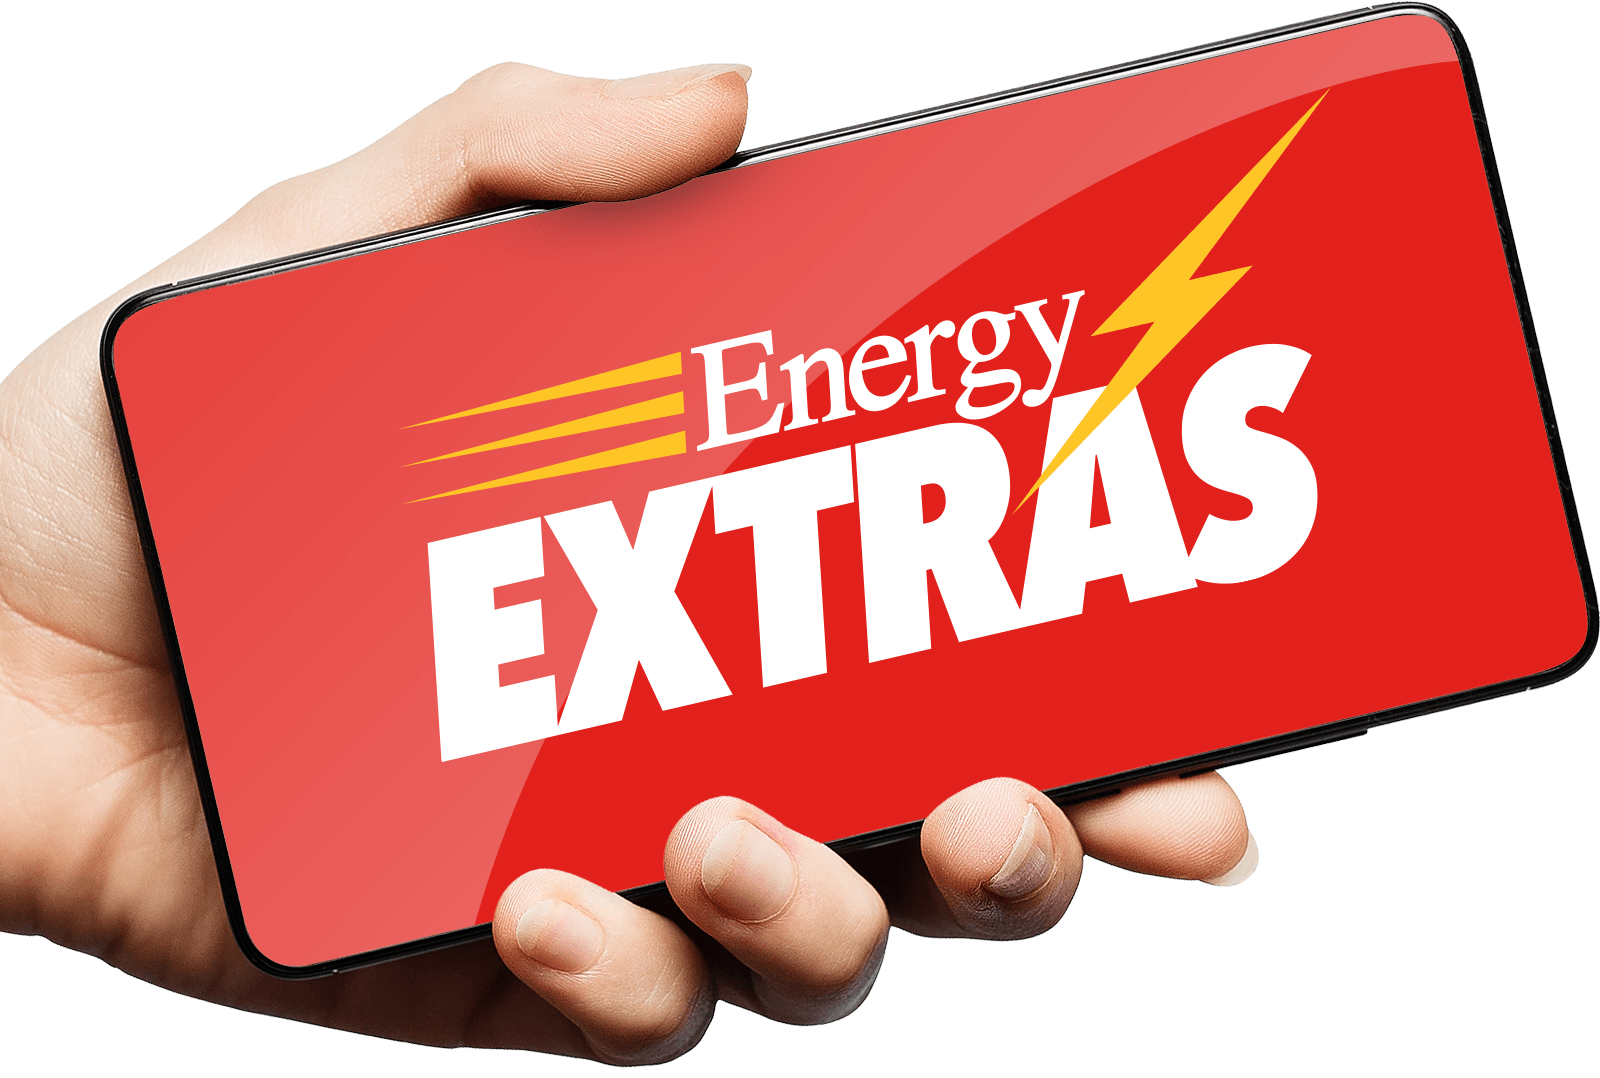 Energy Extras iPhone